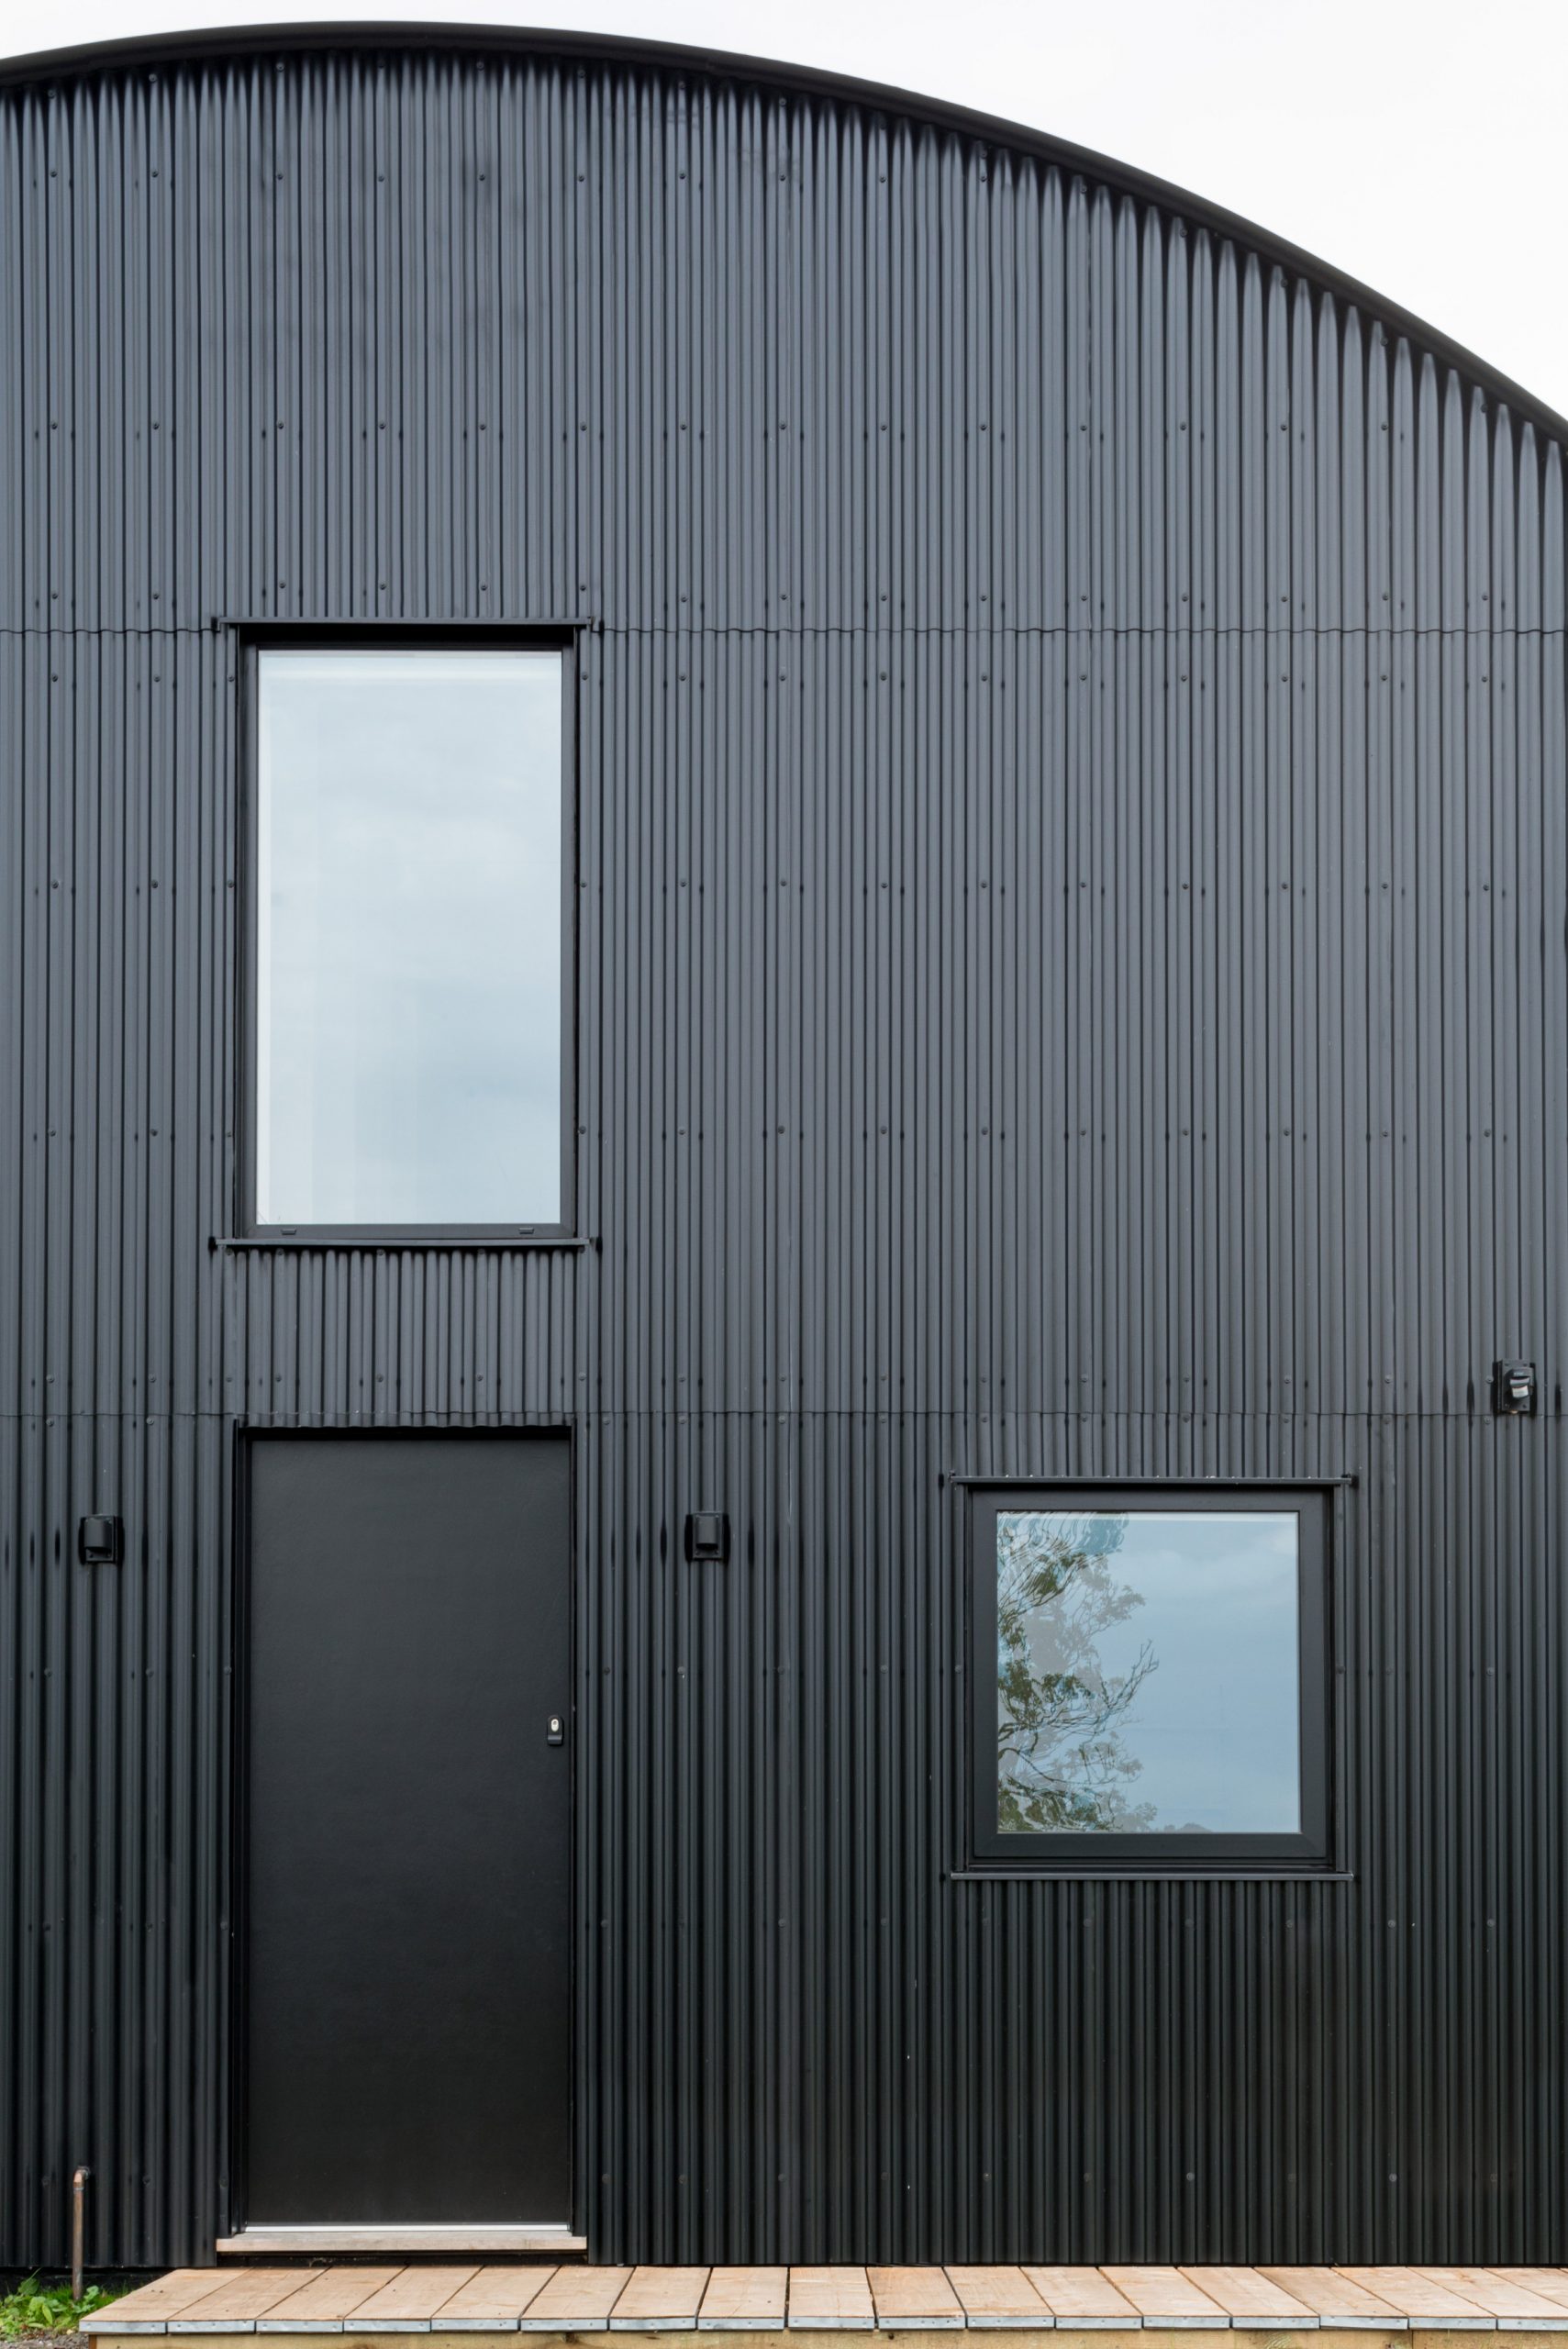 Thép tôn được bao phủ cả bức tường và mái nhà, tạo nên một lớp hoàn thiện màu đen mờ cho phần ngoại thất của DUT18. 